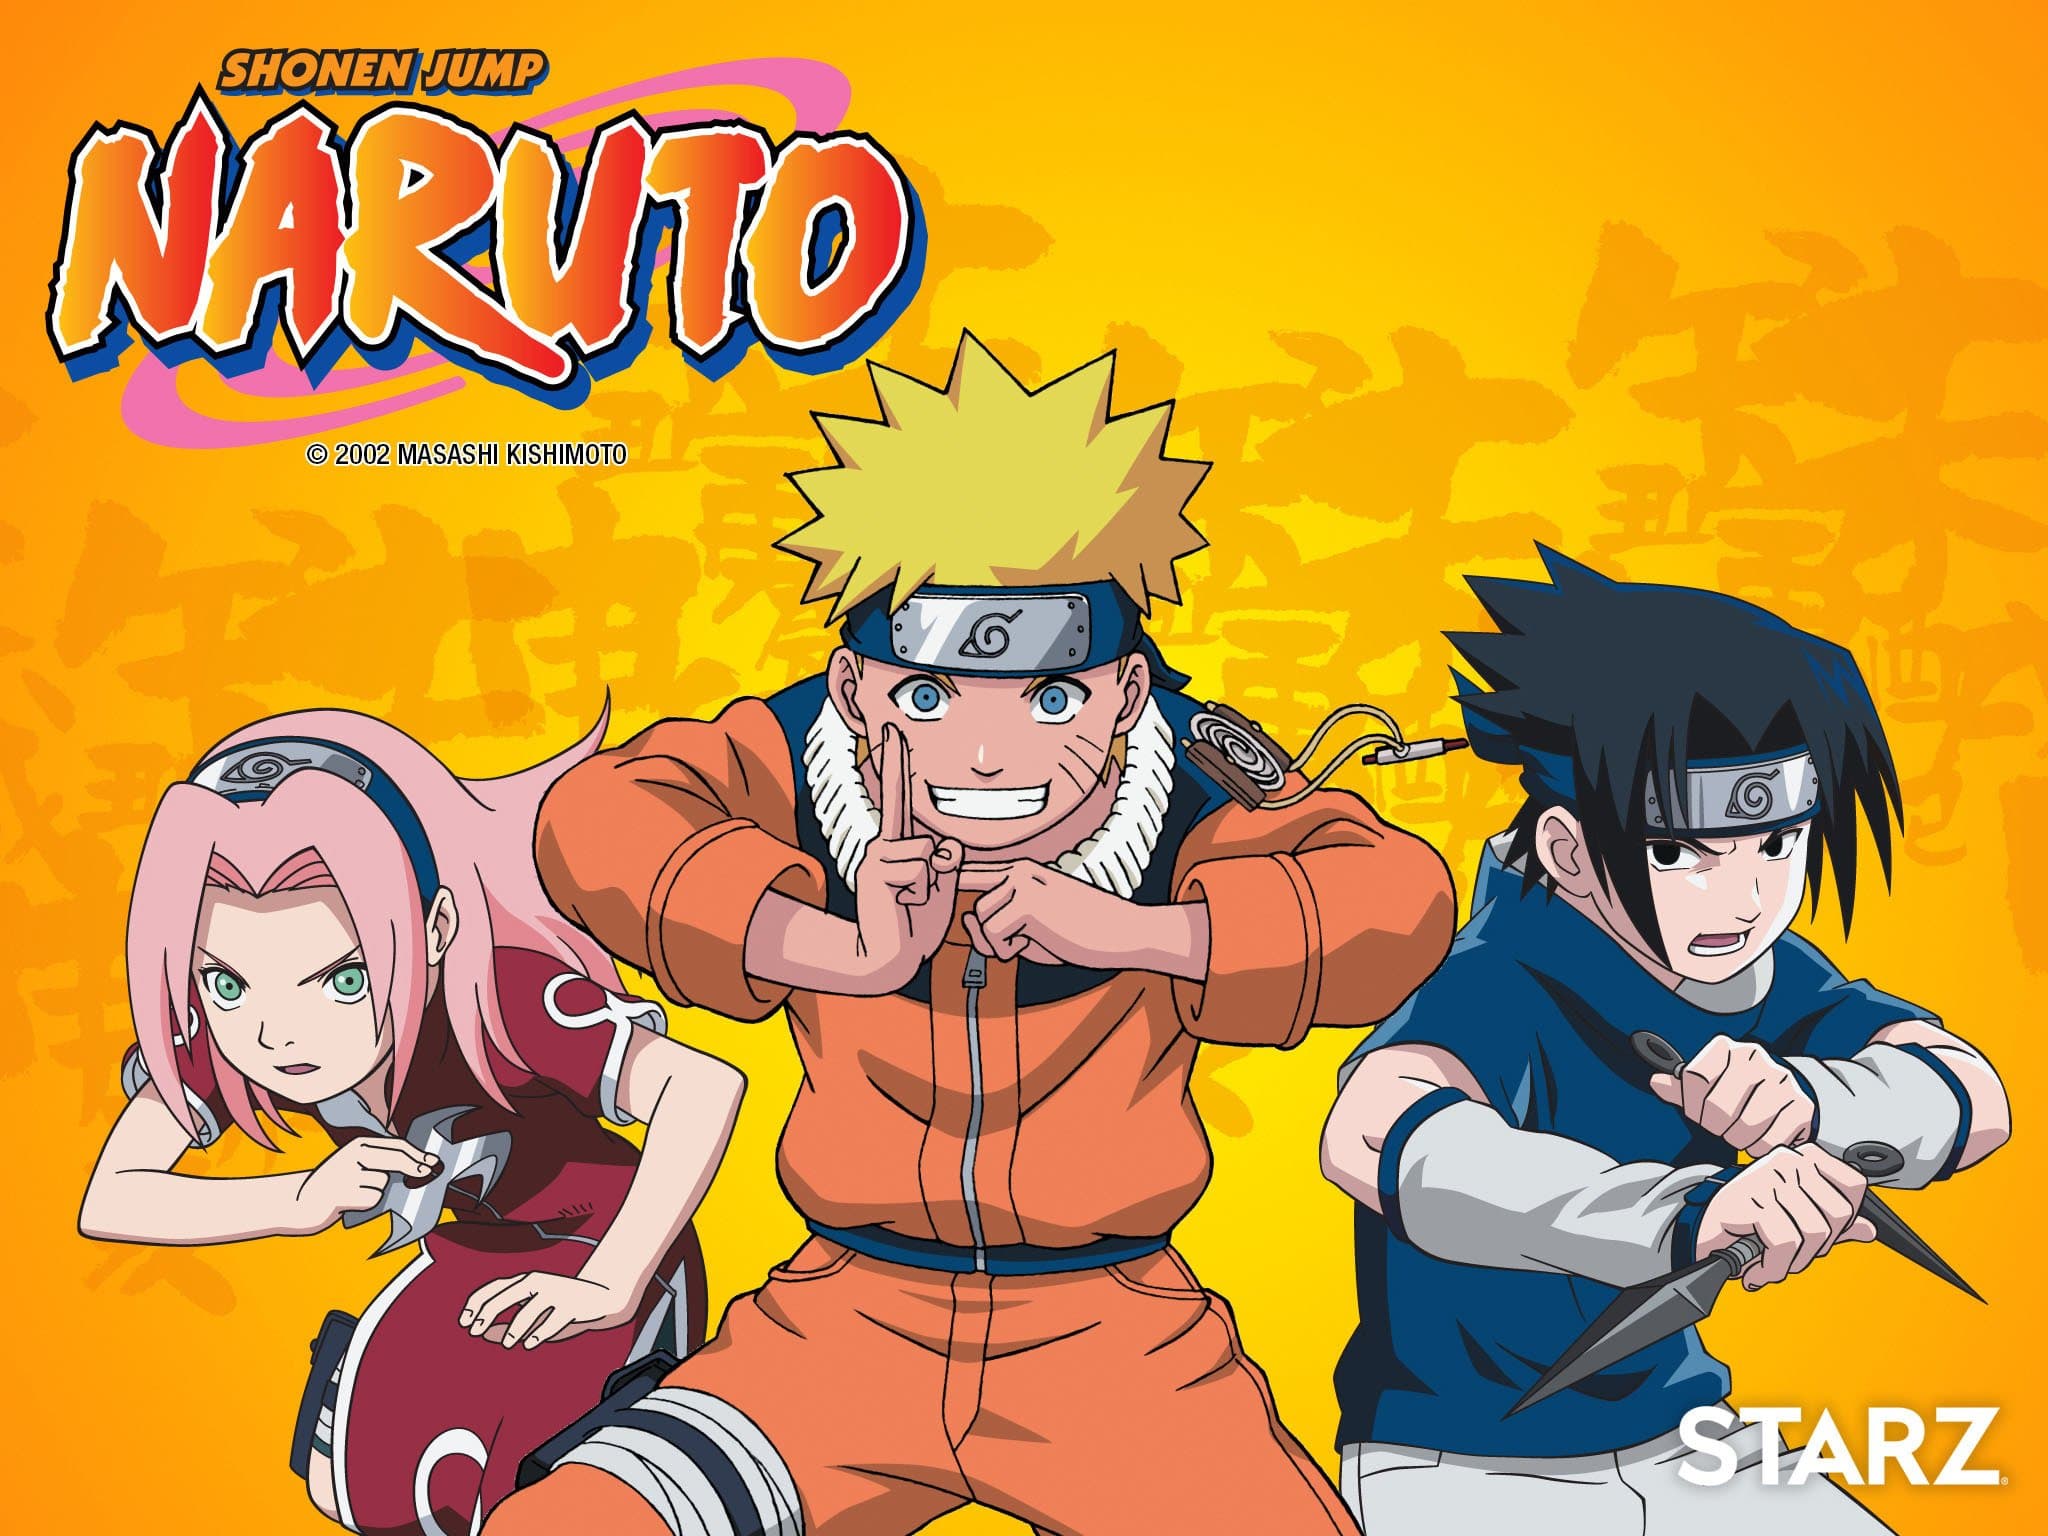 Naruto poster with Sakura, Naruto, and Sasuke